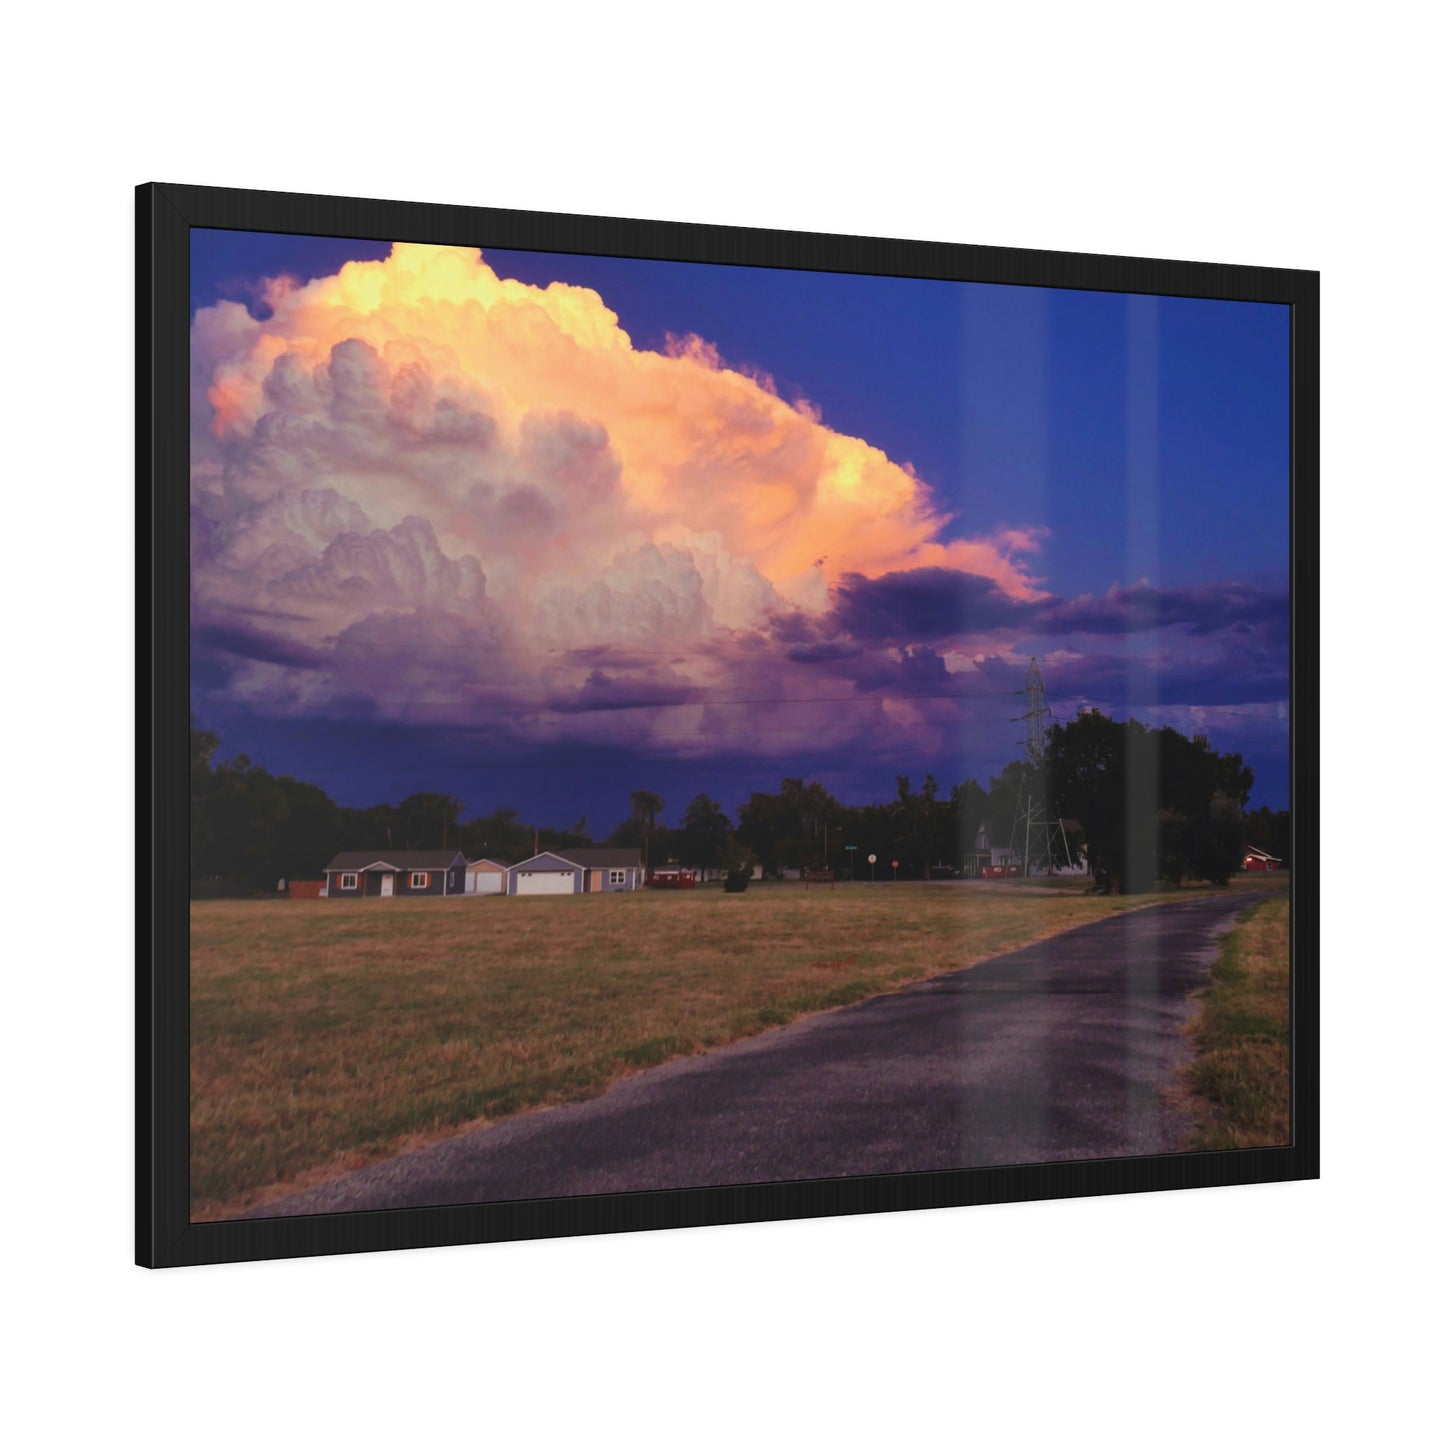 A Kansas Summer Storm Framed Picture